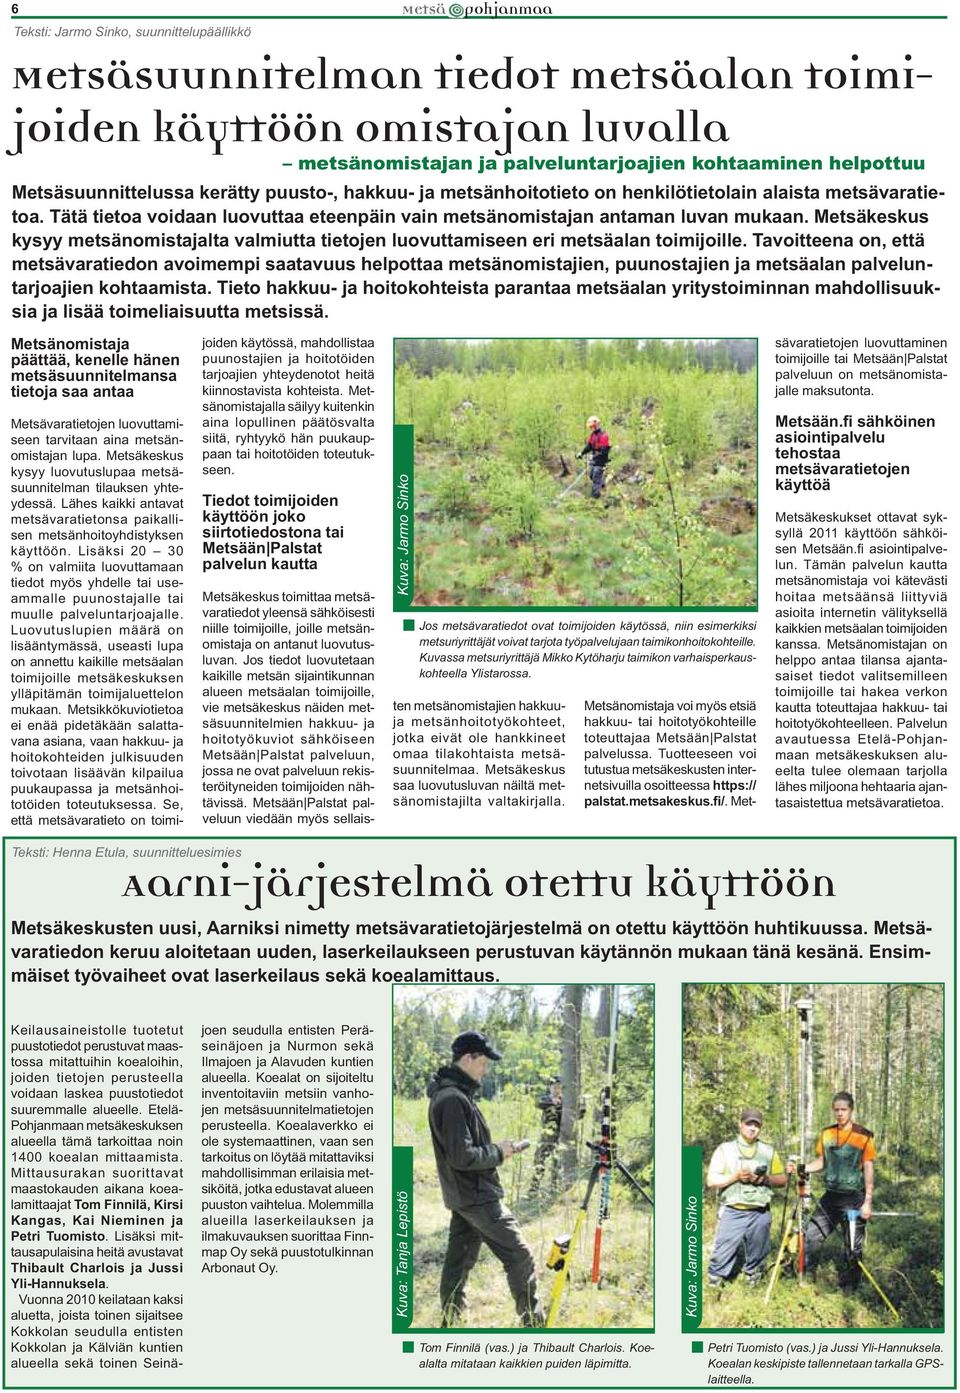 Metsäkeskus kysyy metsänomistajalta valmiutta tietojen luovuttamiseen eri metsäalan toimijoille.